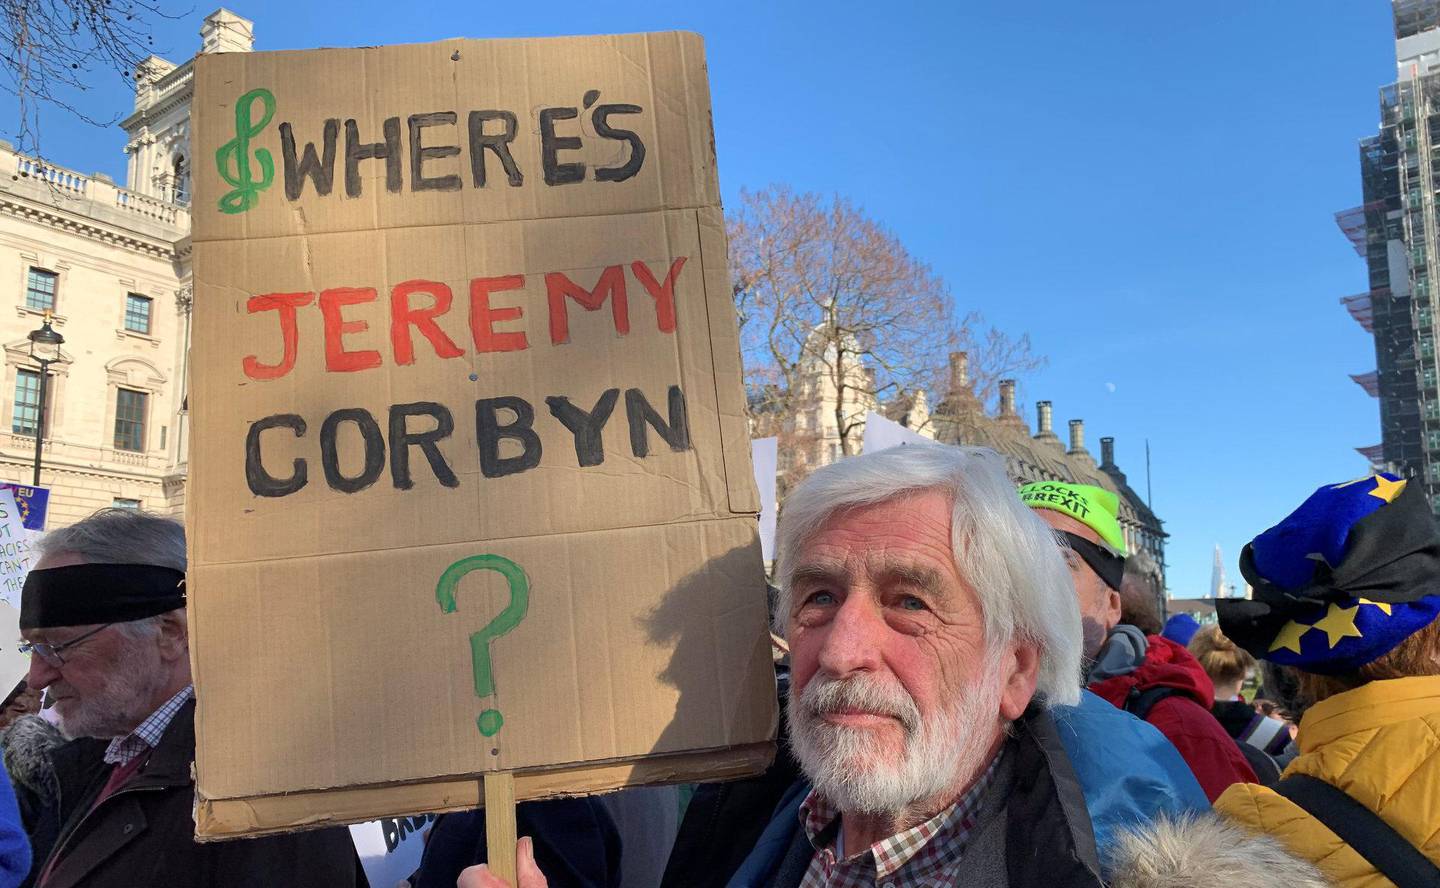 Eric Finlayson (75) har stemt Labour i alle år, men nå er han rasende. Han står blant demonstranter mot brexit foran parlamentet i London.